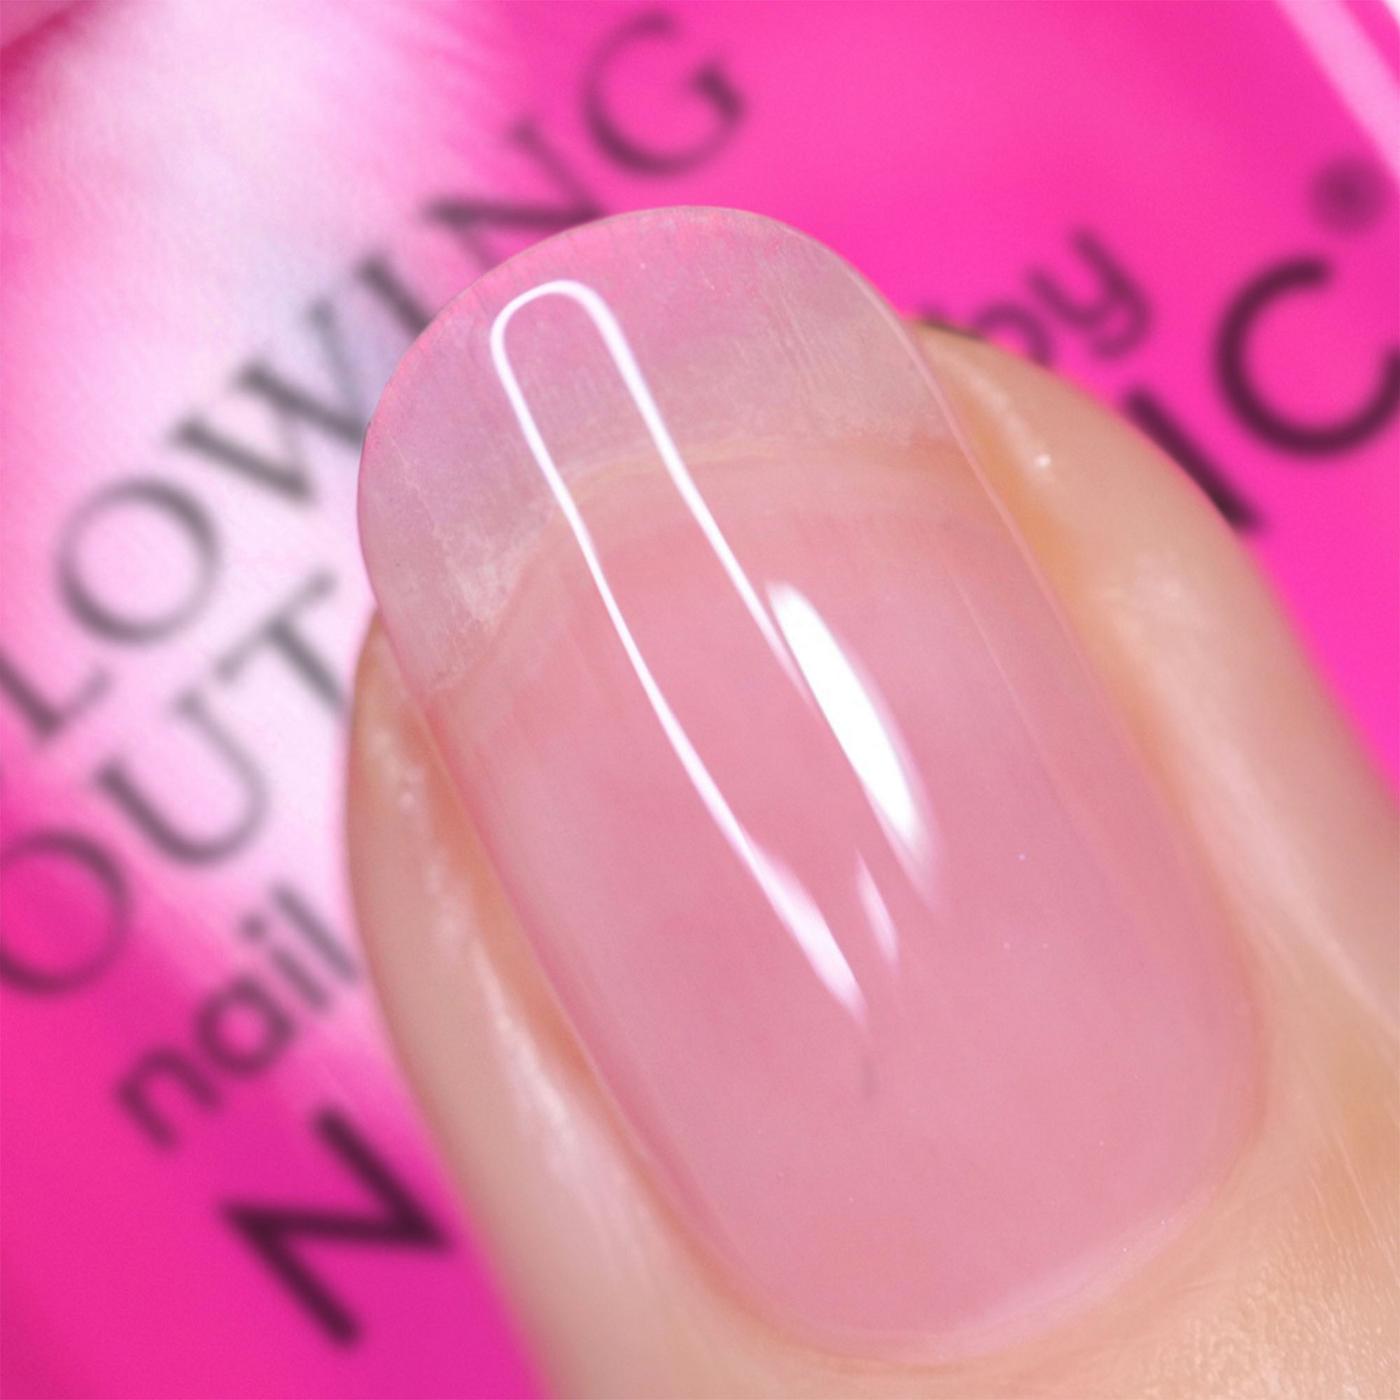 Nails.INC Nail Polish - Glowing My Way; image 3 of 4